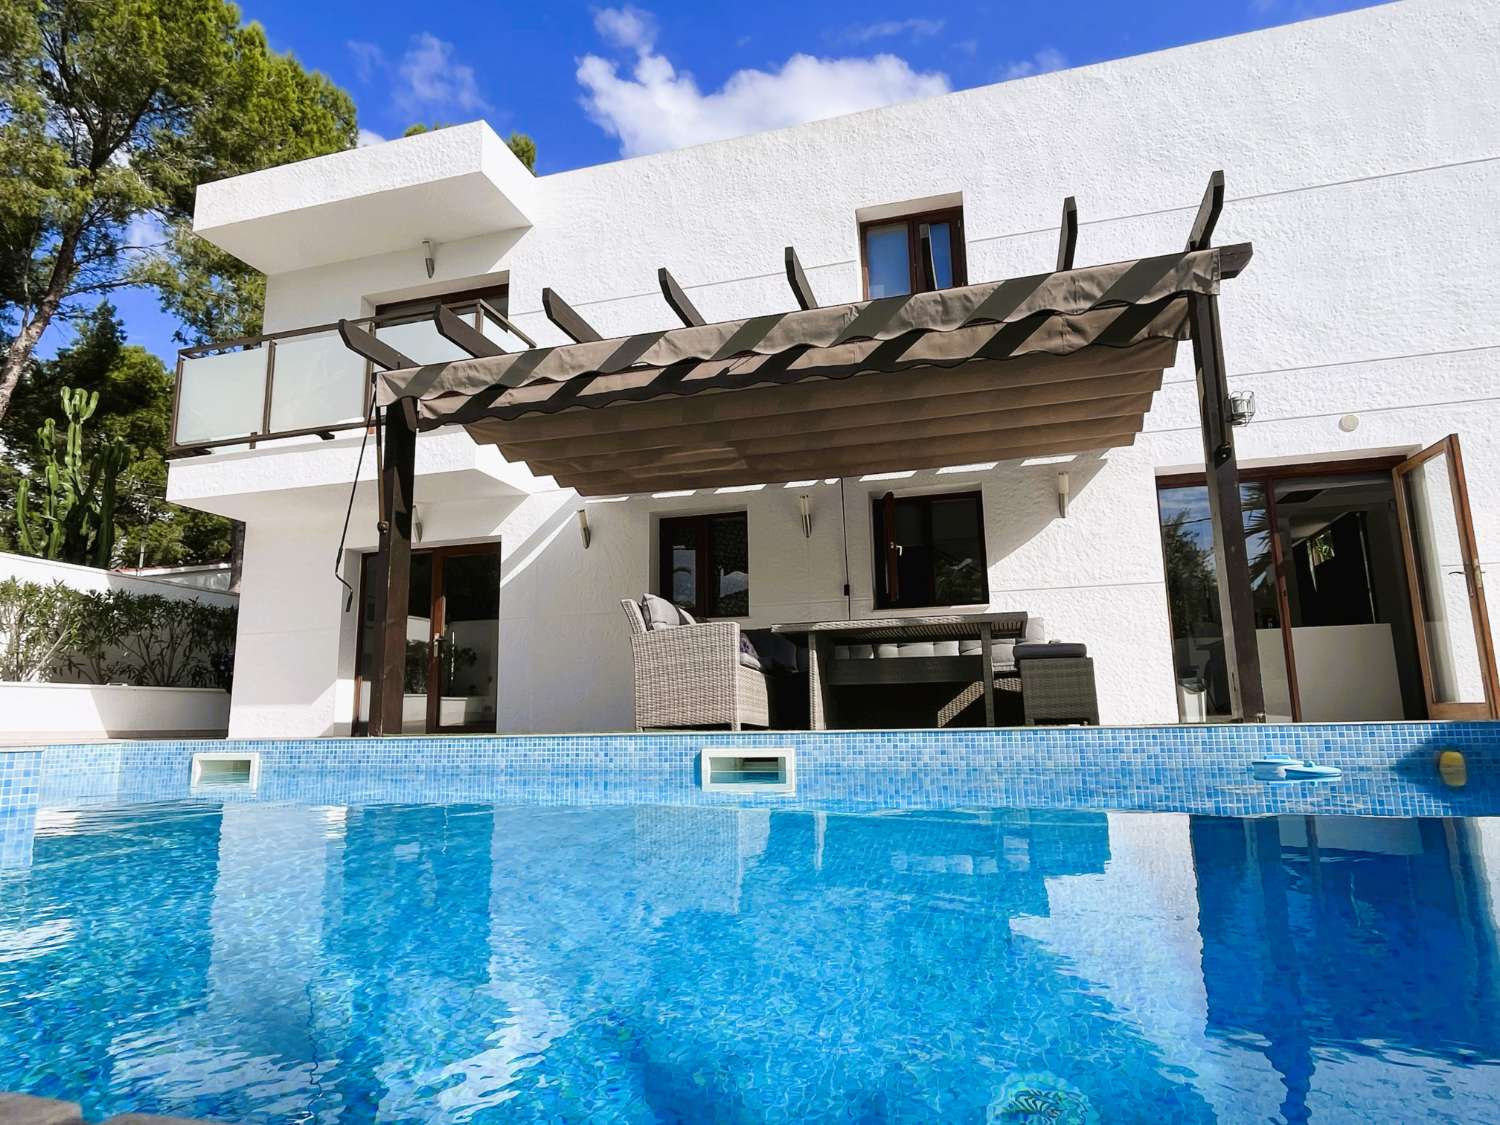 Encantadora villa moderna con piscina en Las Tras Calas